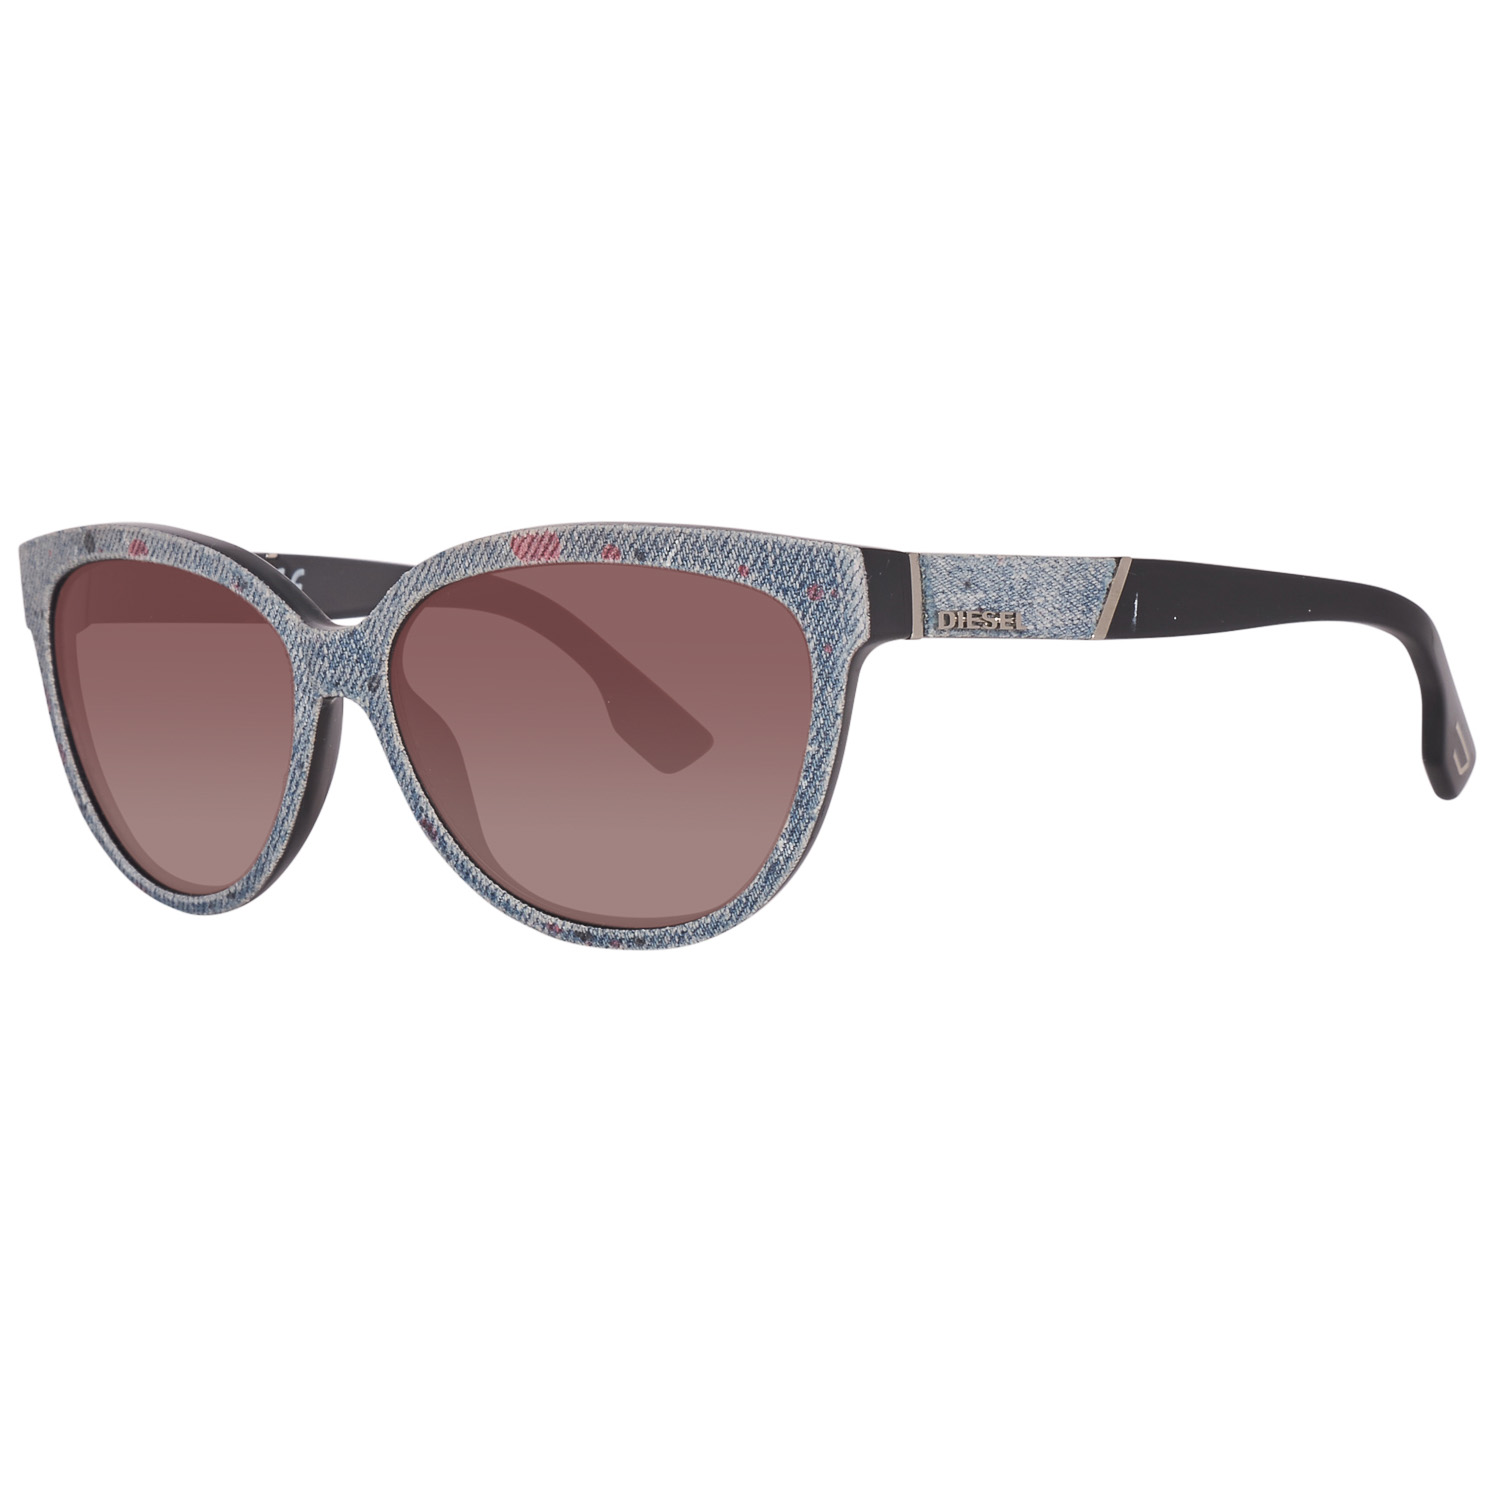 Diesel Sunglasses DL0139 05E 58